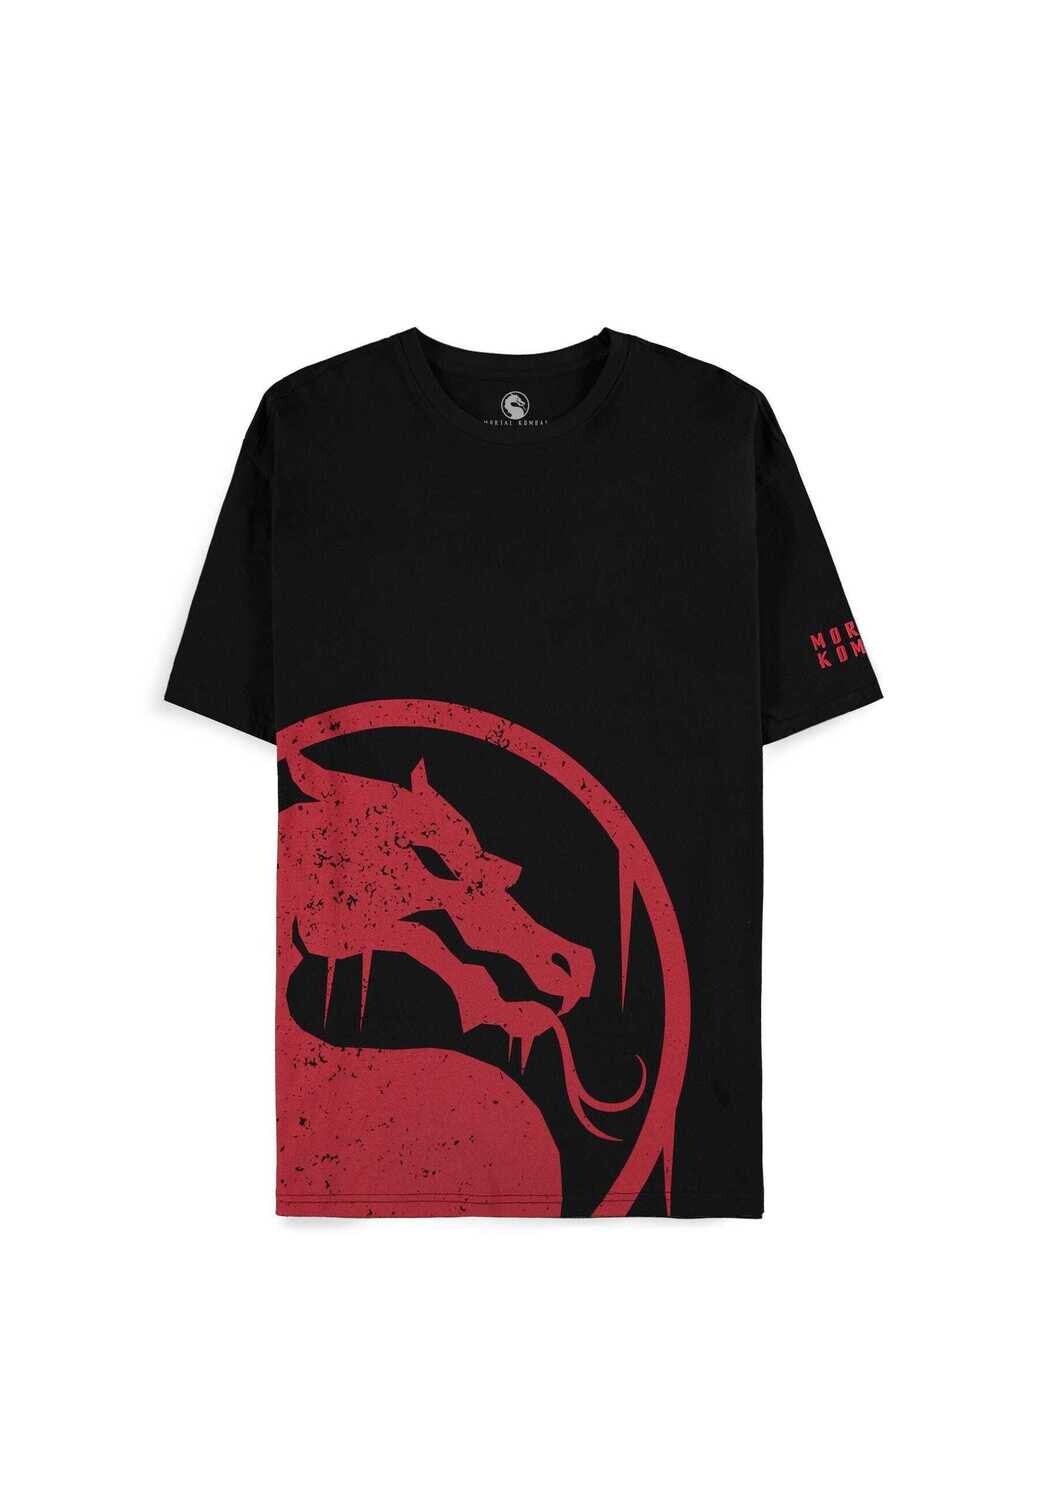 Mortal Kombat - Men's Short Sleeved T-shirt